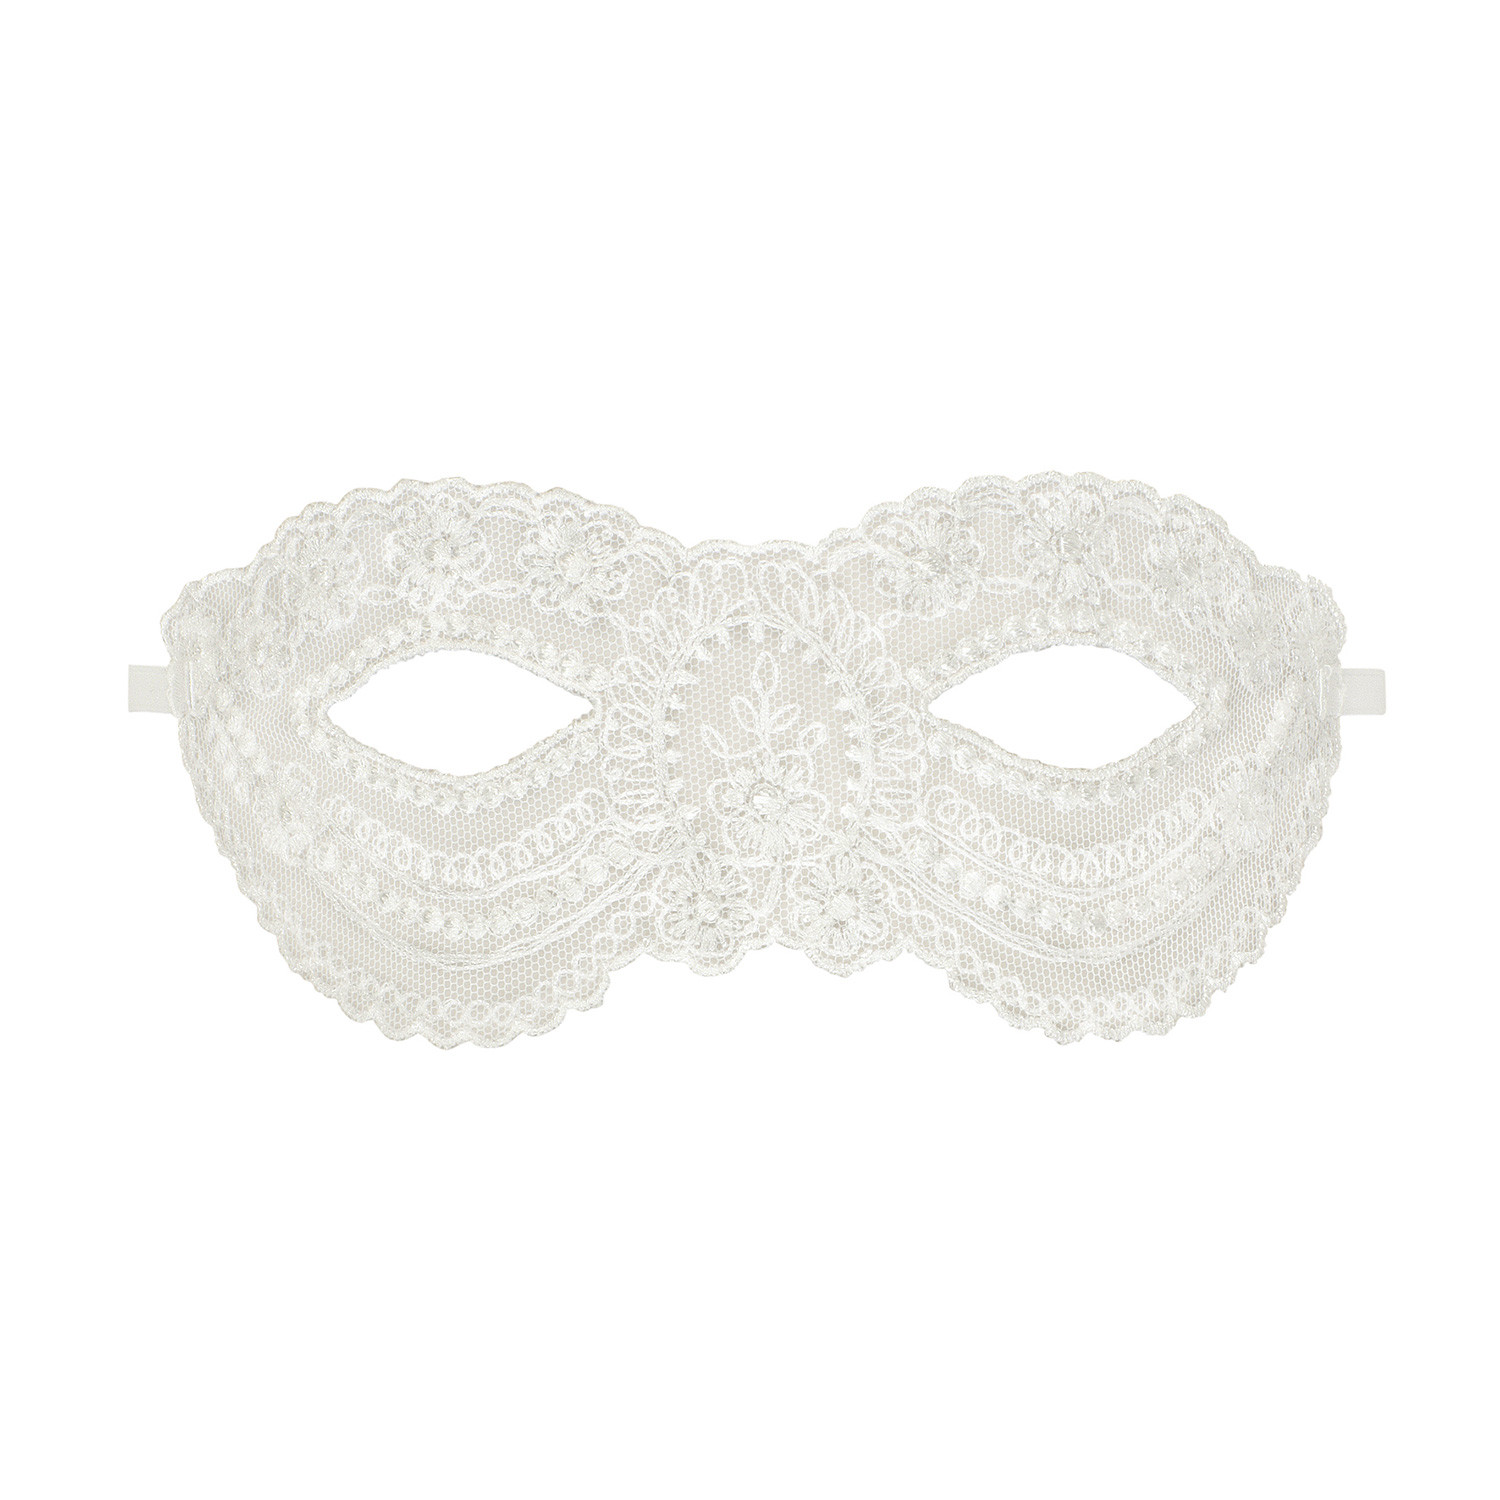 Geheimnisvolle venezianische Maske "Faye" von Escora